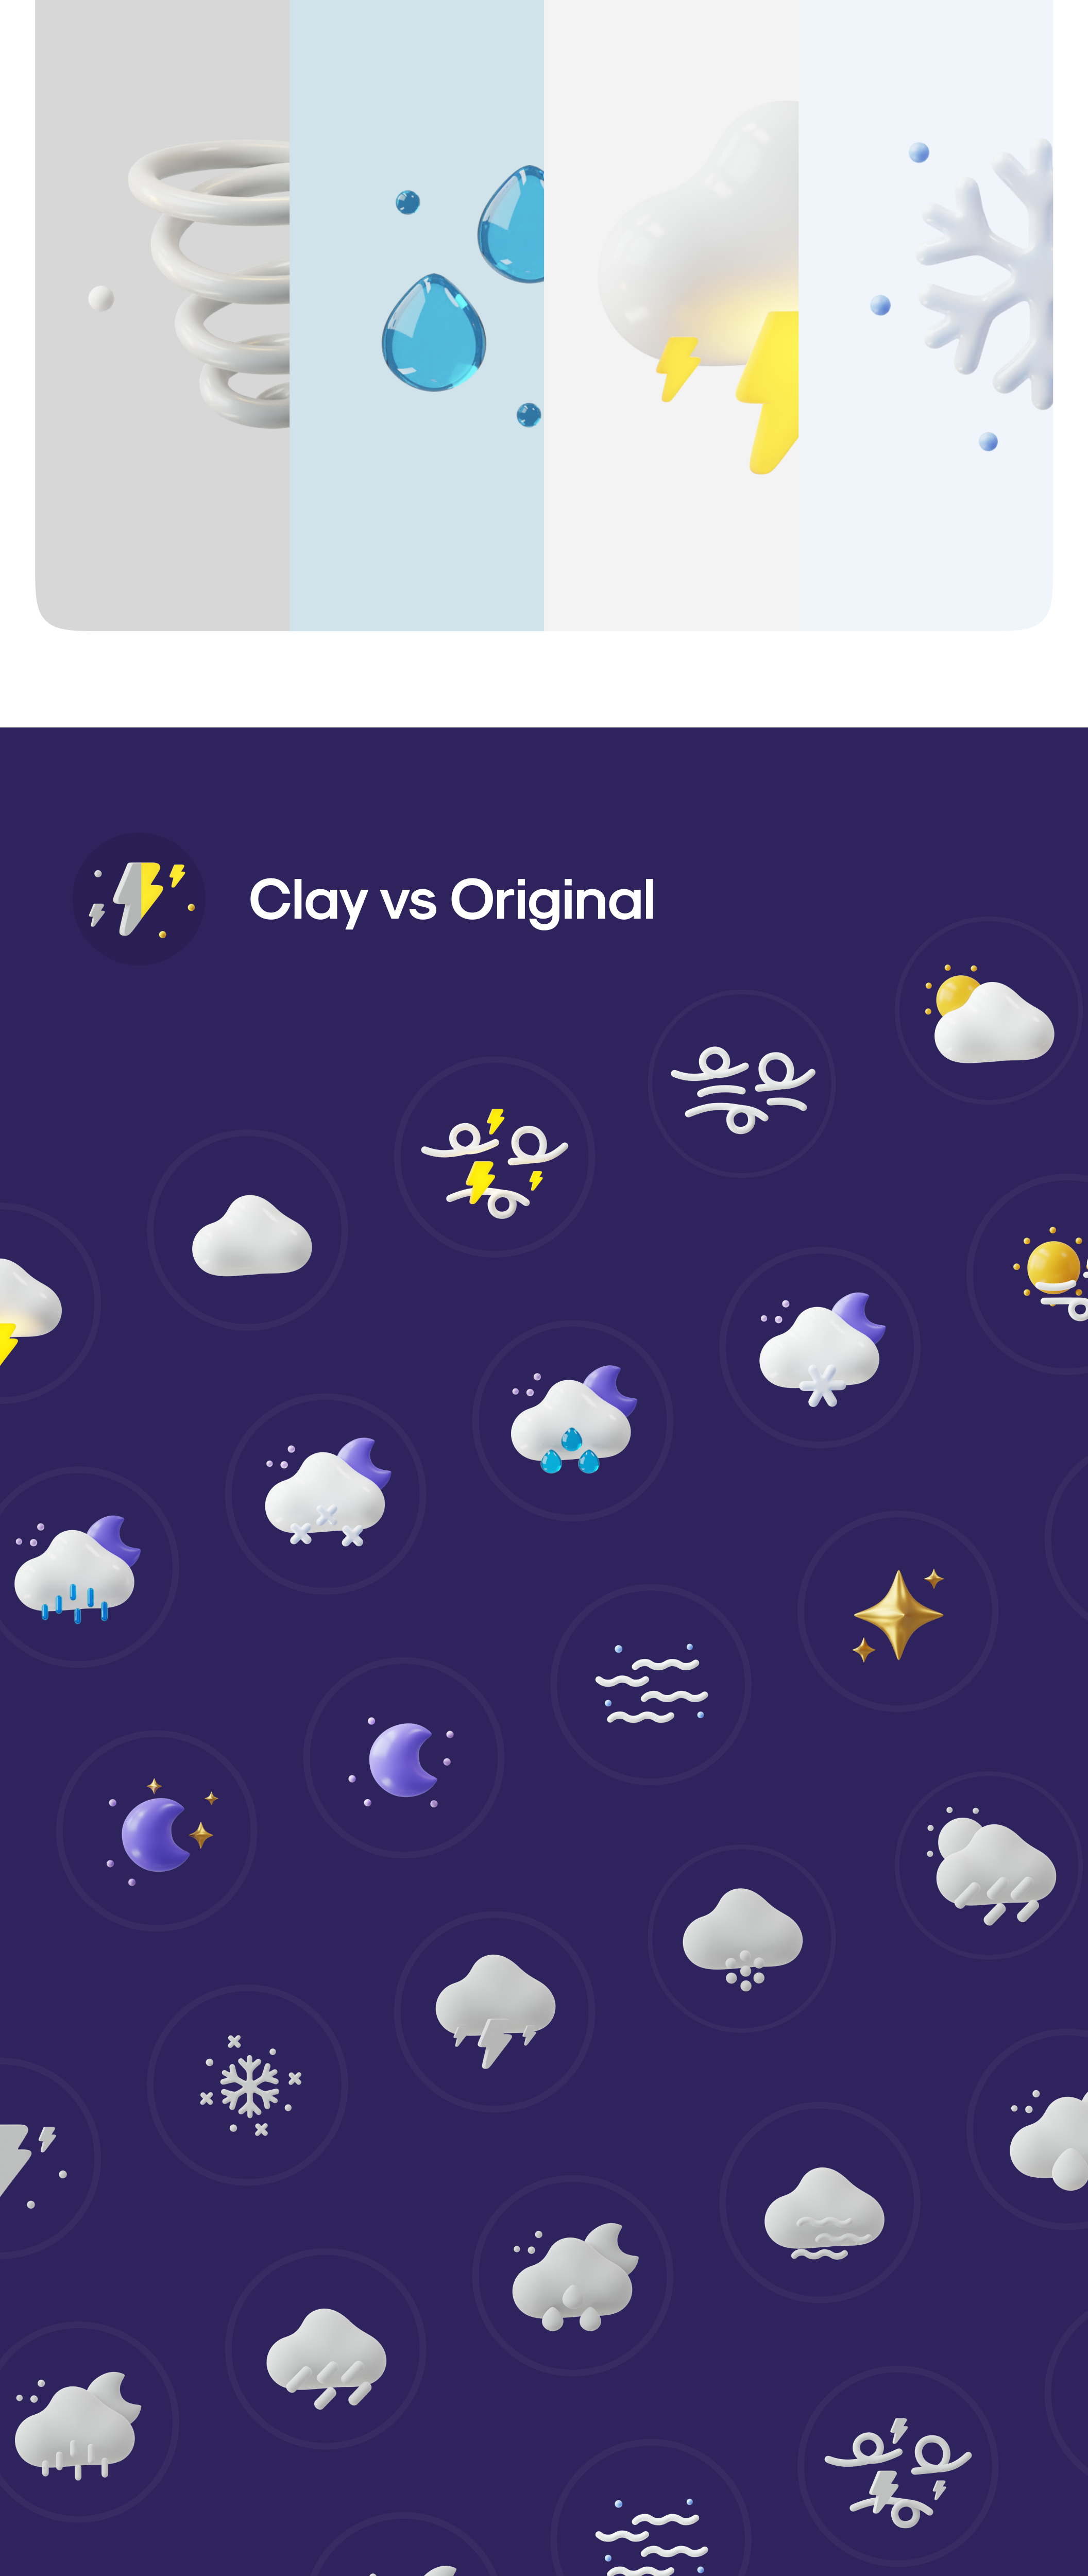 50多个3D高分辨率原始风格和粘土风格完美天气图标包 Weatherly 3D icons – 50+ Weather icons 图标素材 第13张